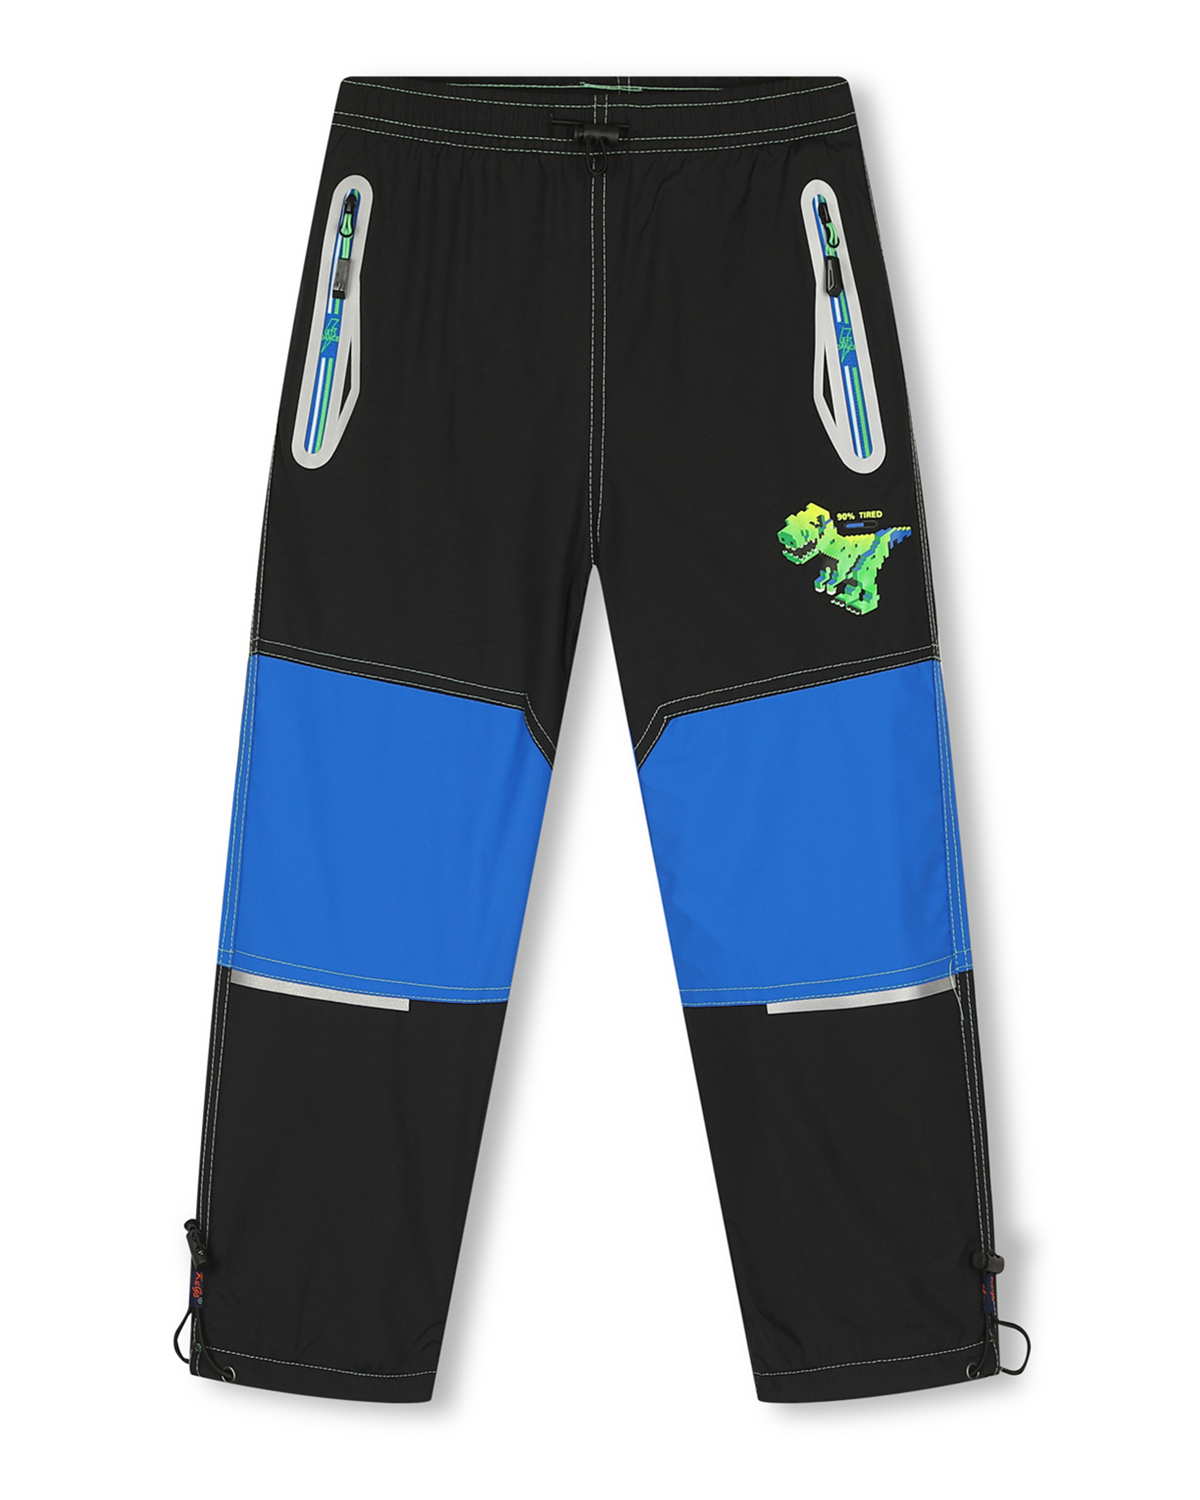 Levně Chlapecké šusťákové kalhoty, zateplené - KUGO DK7129, černá / modrá aplikace Barva: Černá